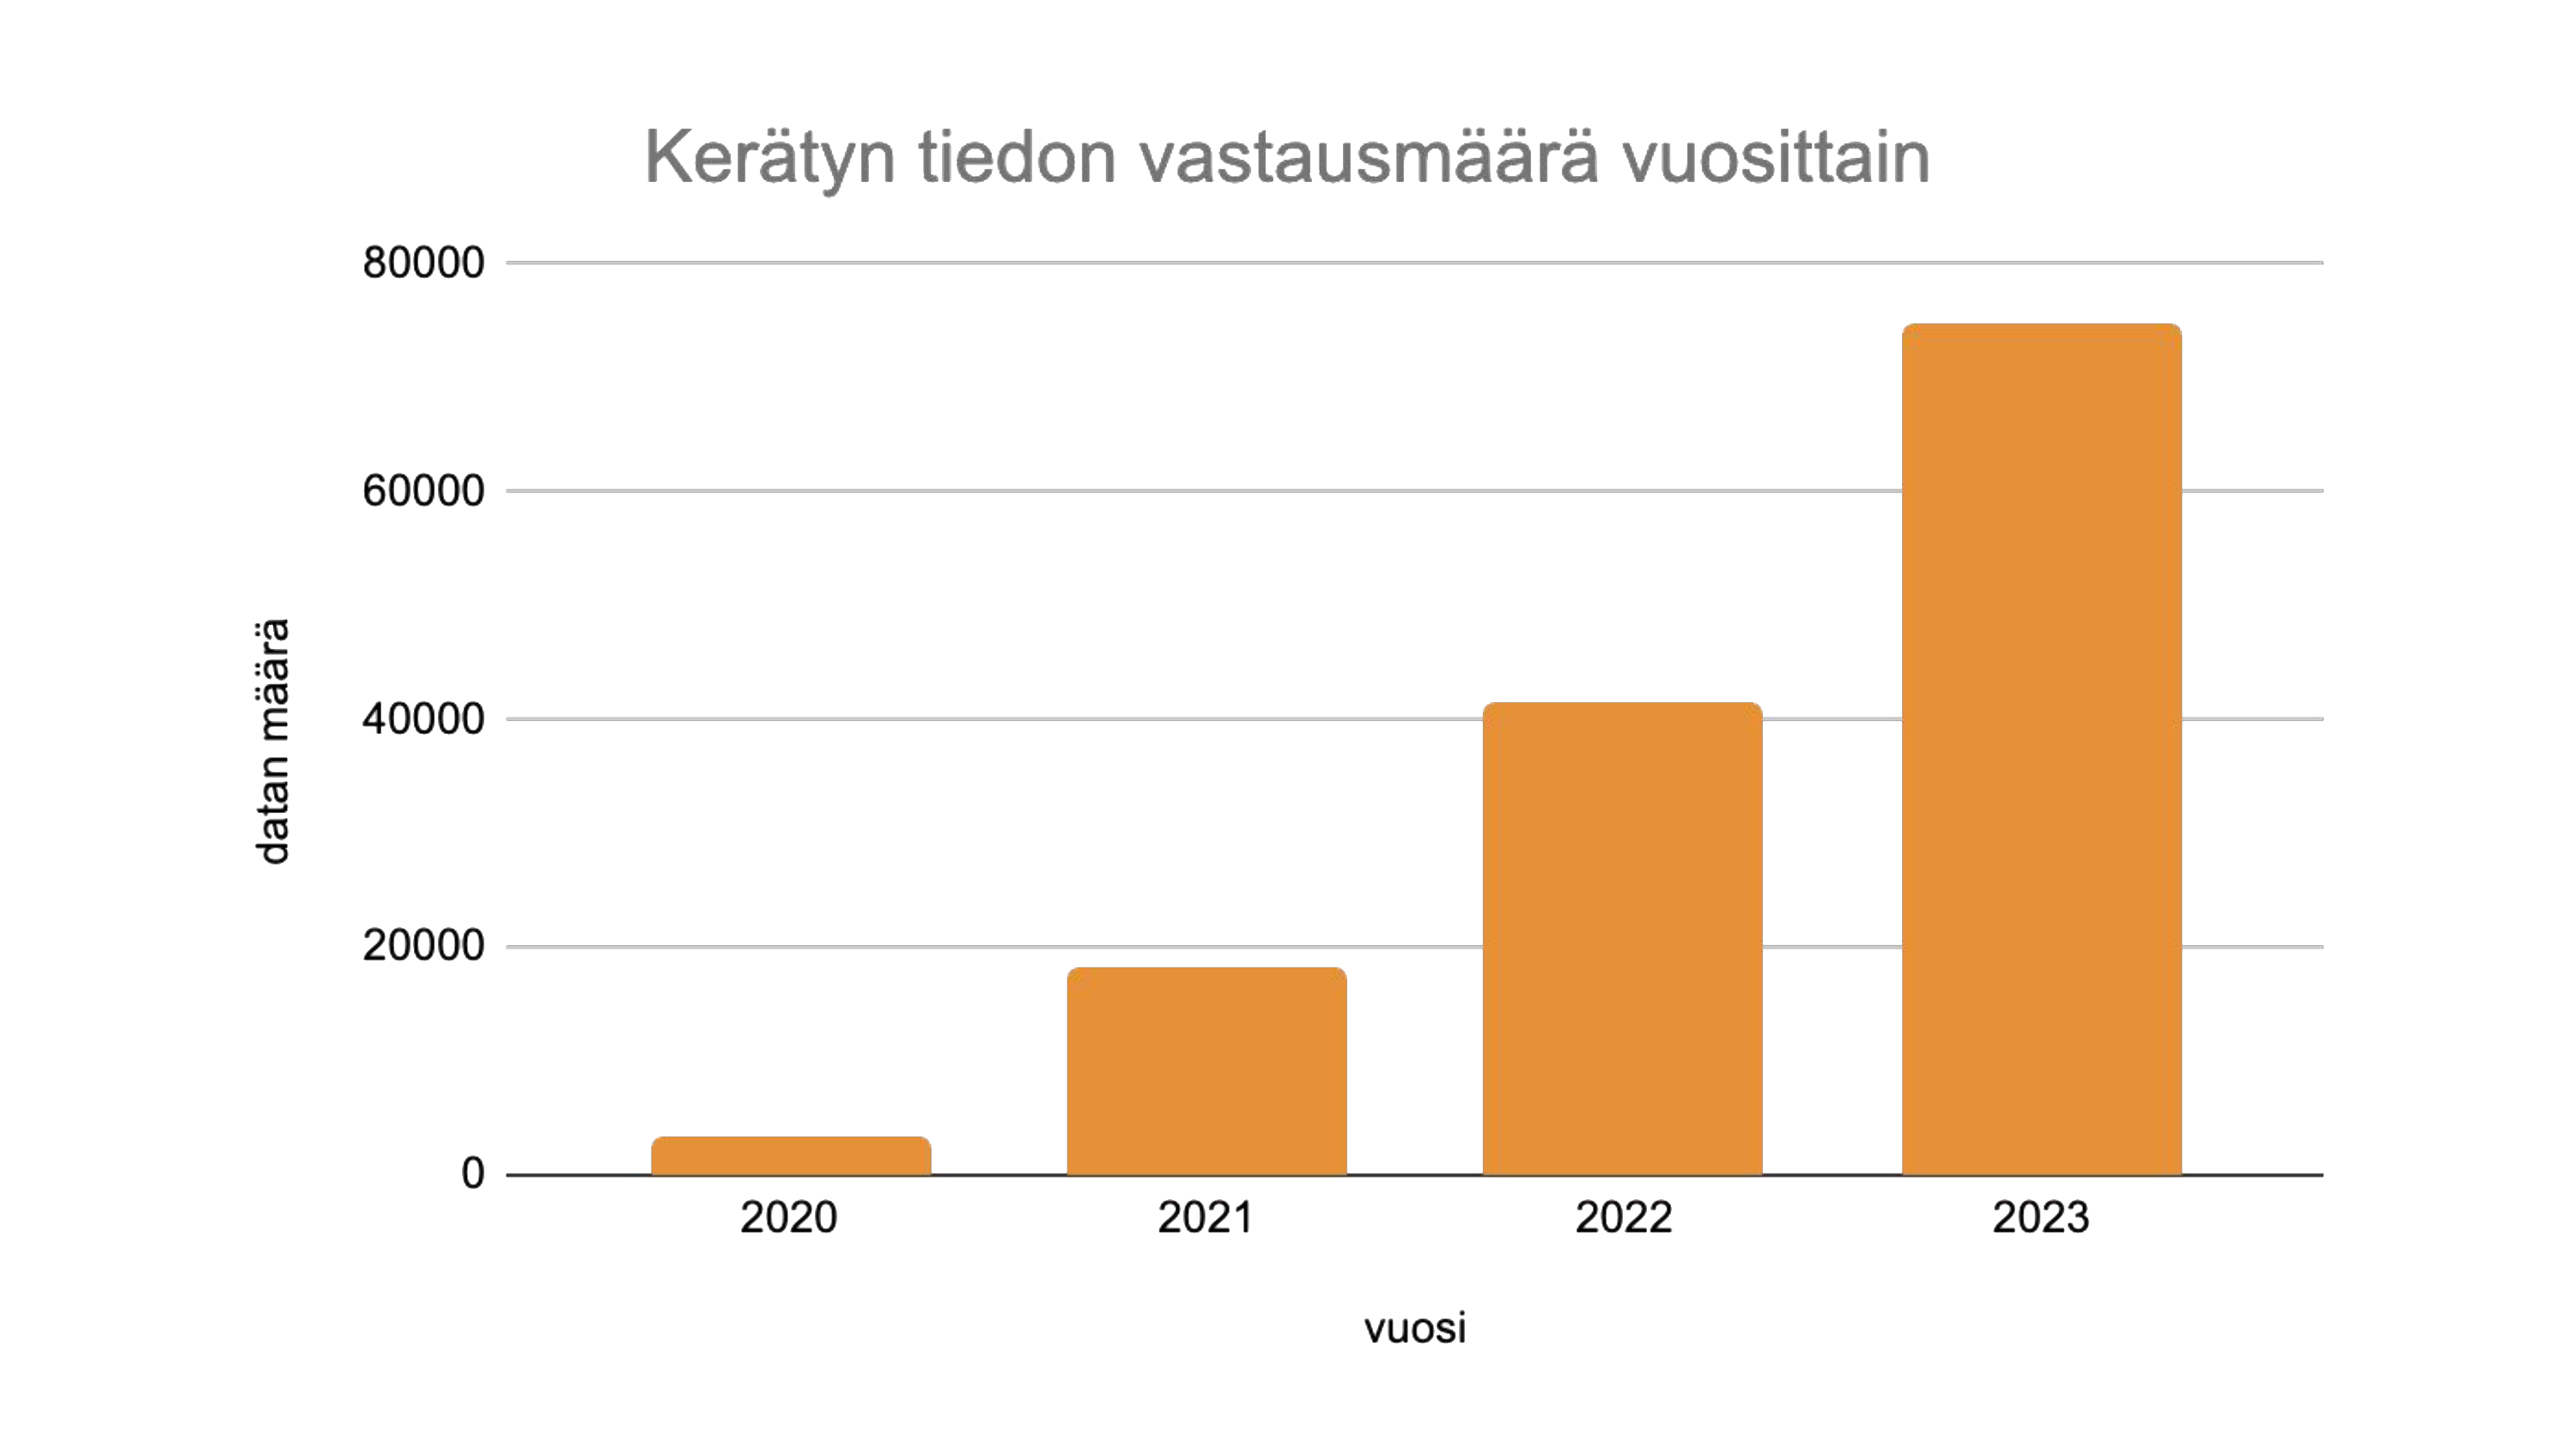 Salmi Platform Oy:n keräämän tiedon määrä vuosina 2020-2023.